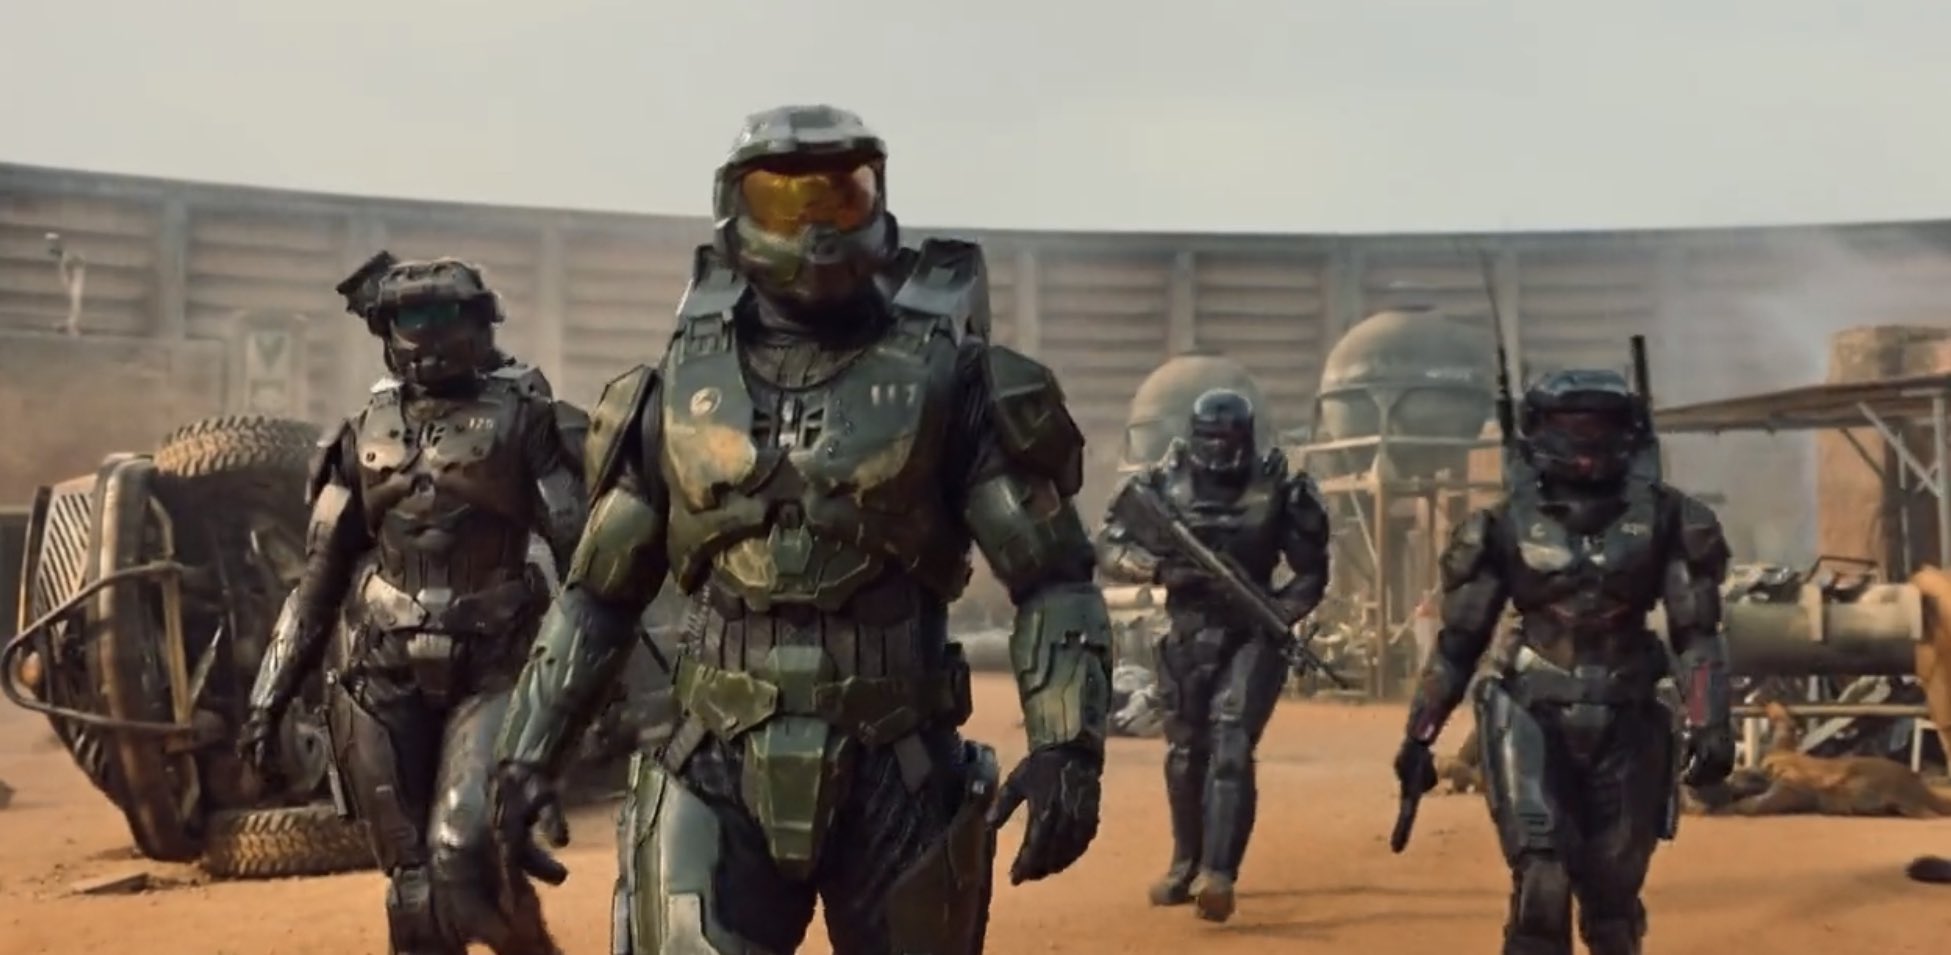 Halo : un nouveau trailer impressionnant pour la série